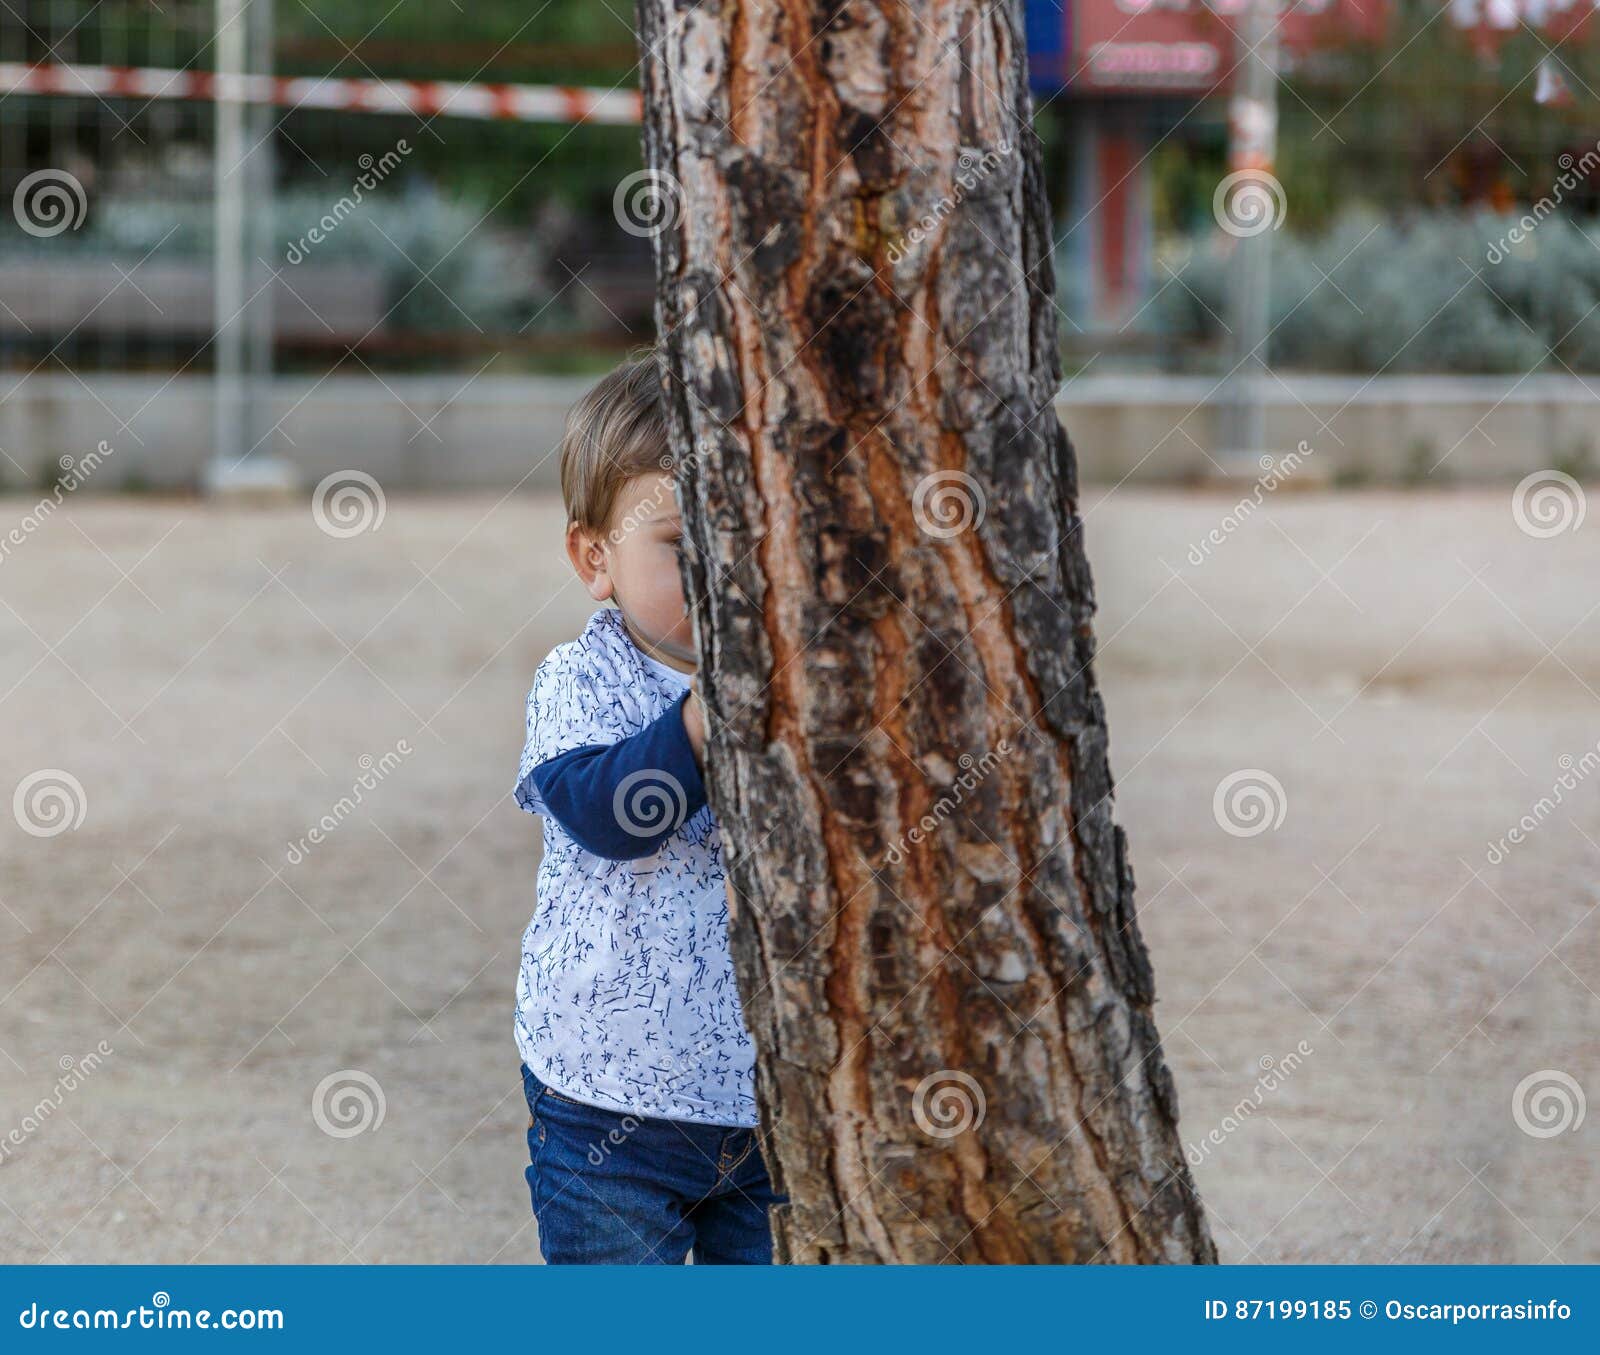 Мальчик решил спрятаться за то большое дерево. Спрятался за деревом. Мальчик прячется за деревом. Девочка спряталась за дерево. Прячется за деревом.